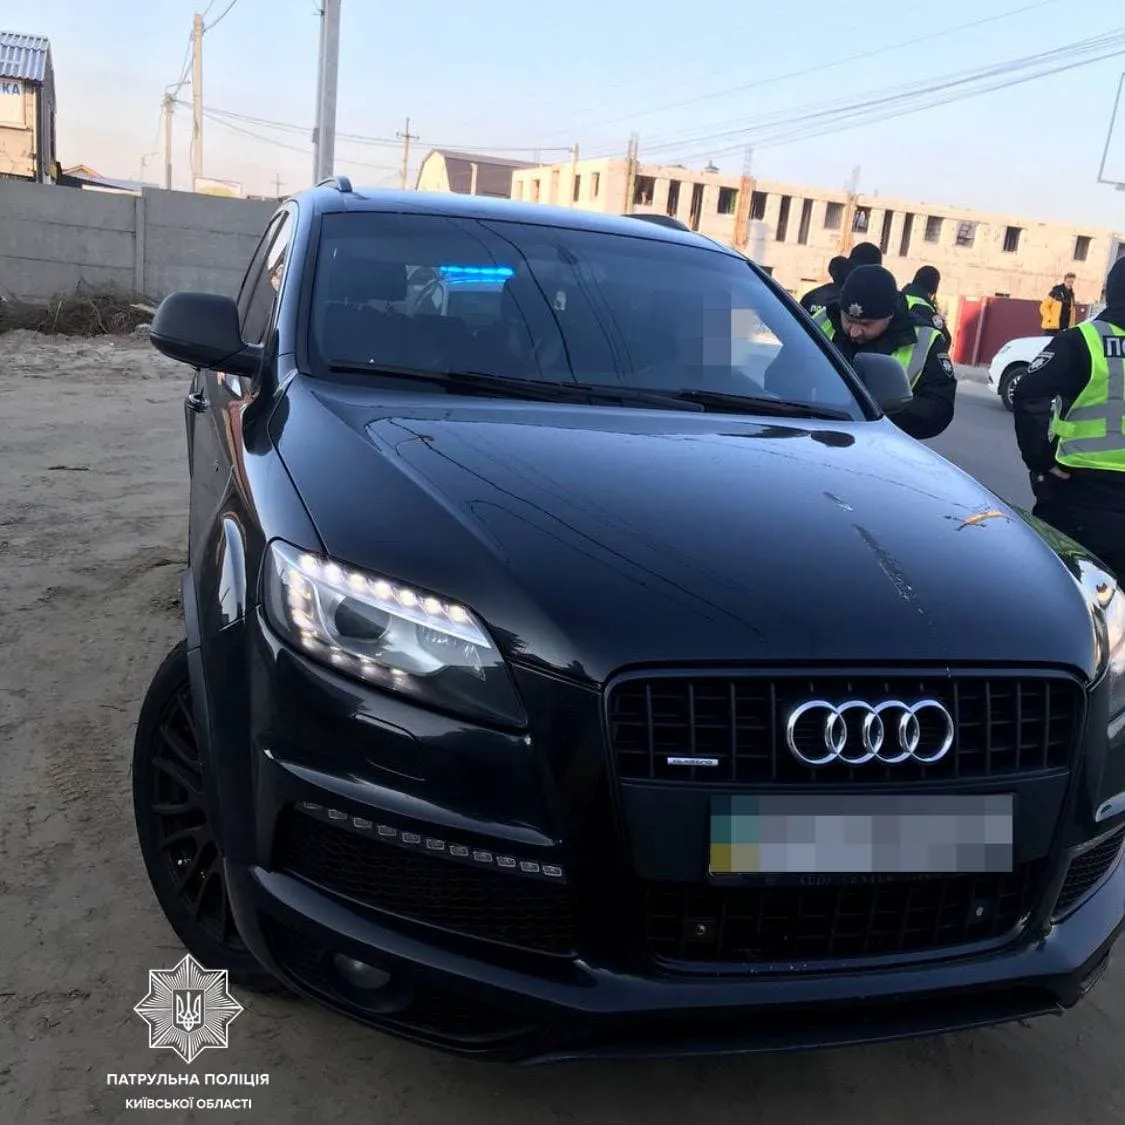 Audi стрільця, який поранив чоловіка у Києві, зупинили в Софіївській Борщагівці